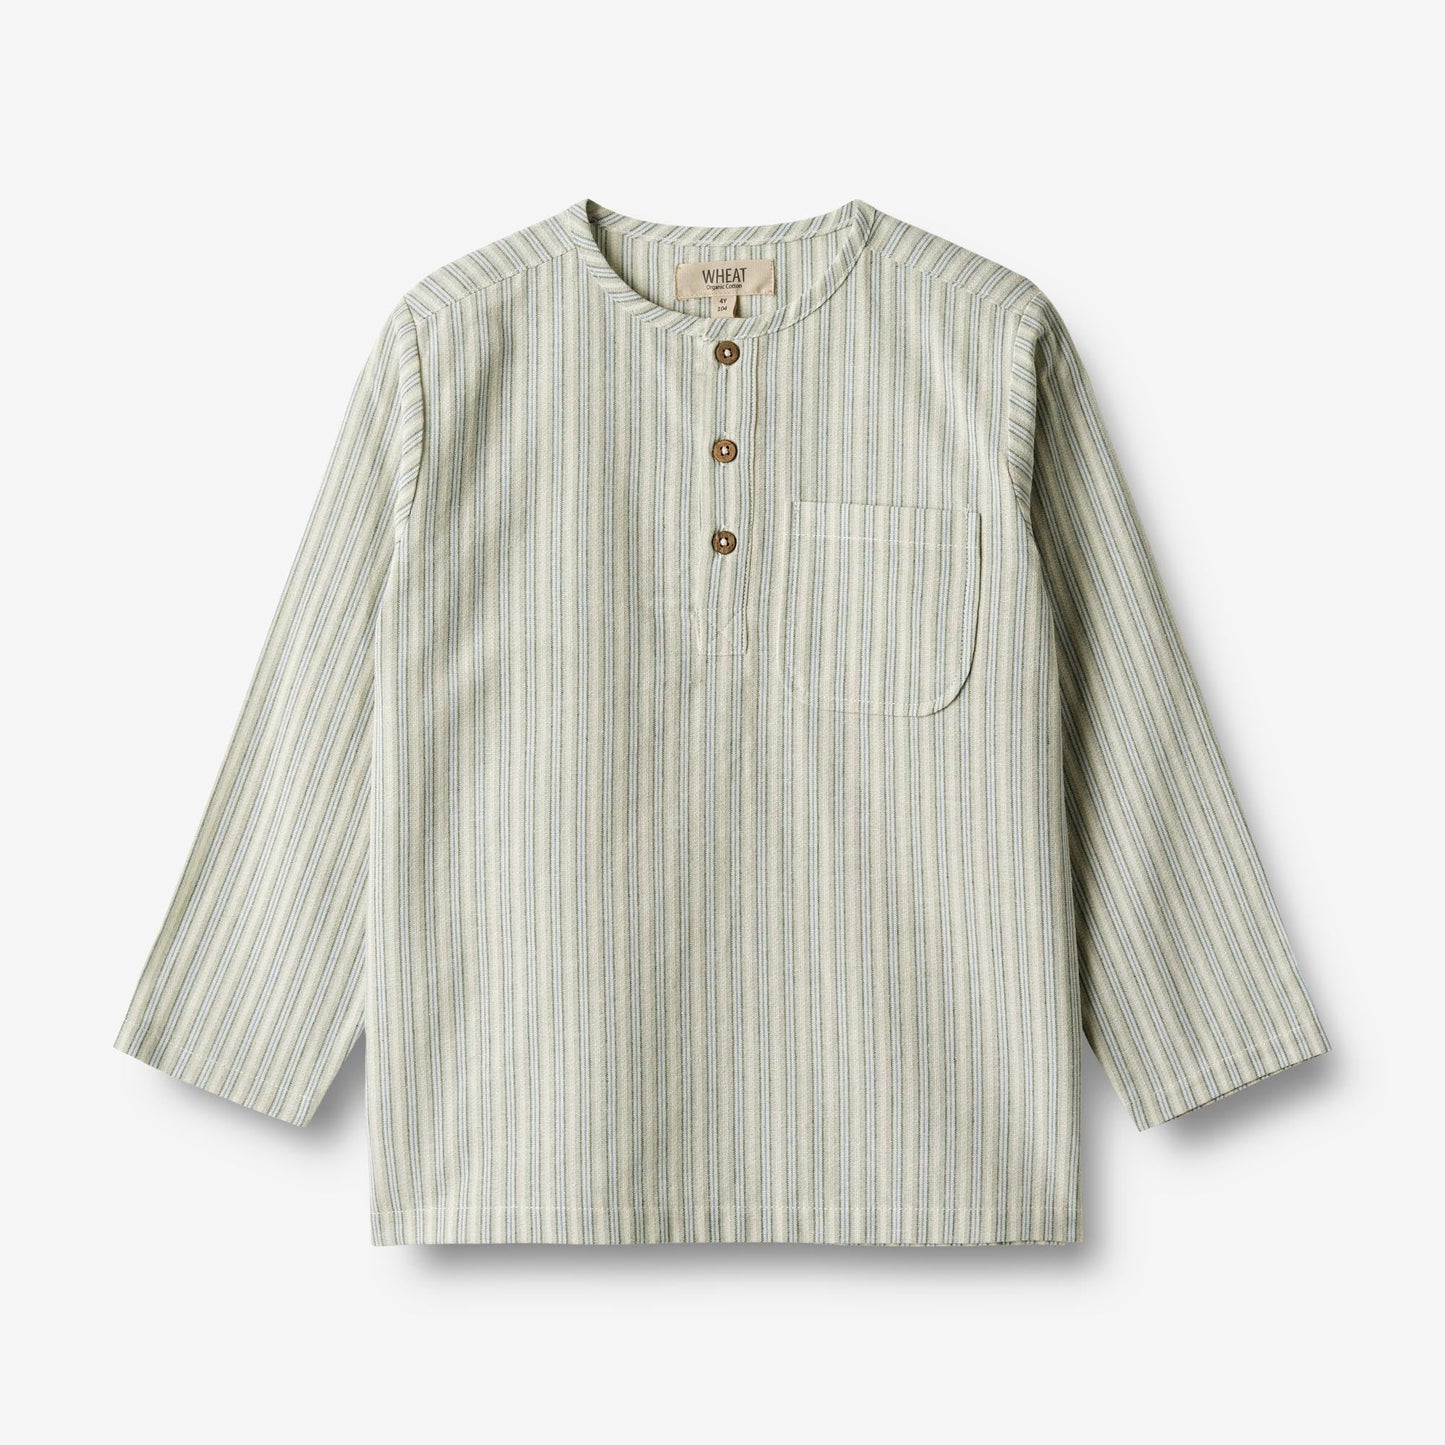 Wheat 'Bjork' Children's Shirt - Aqua Stripe